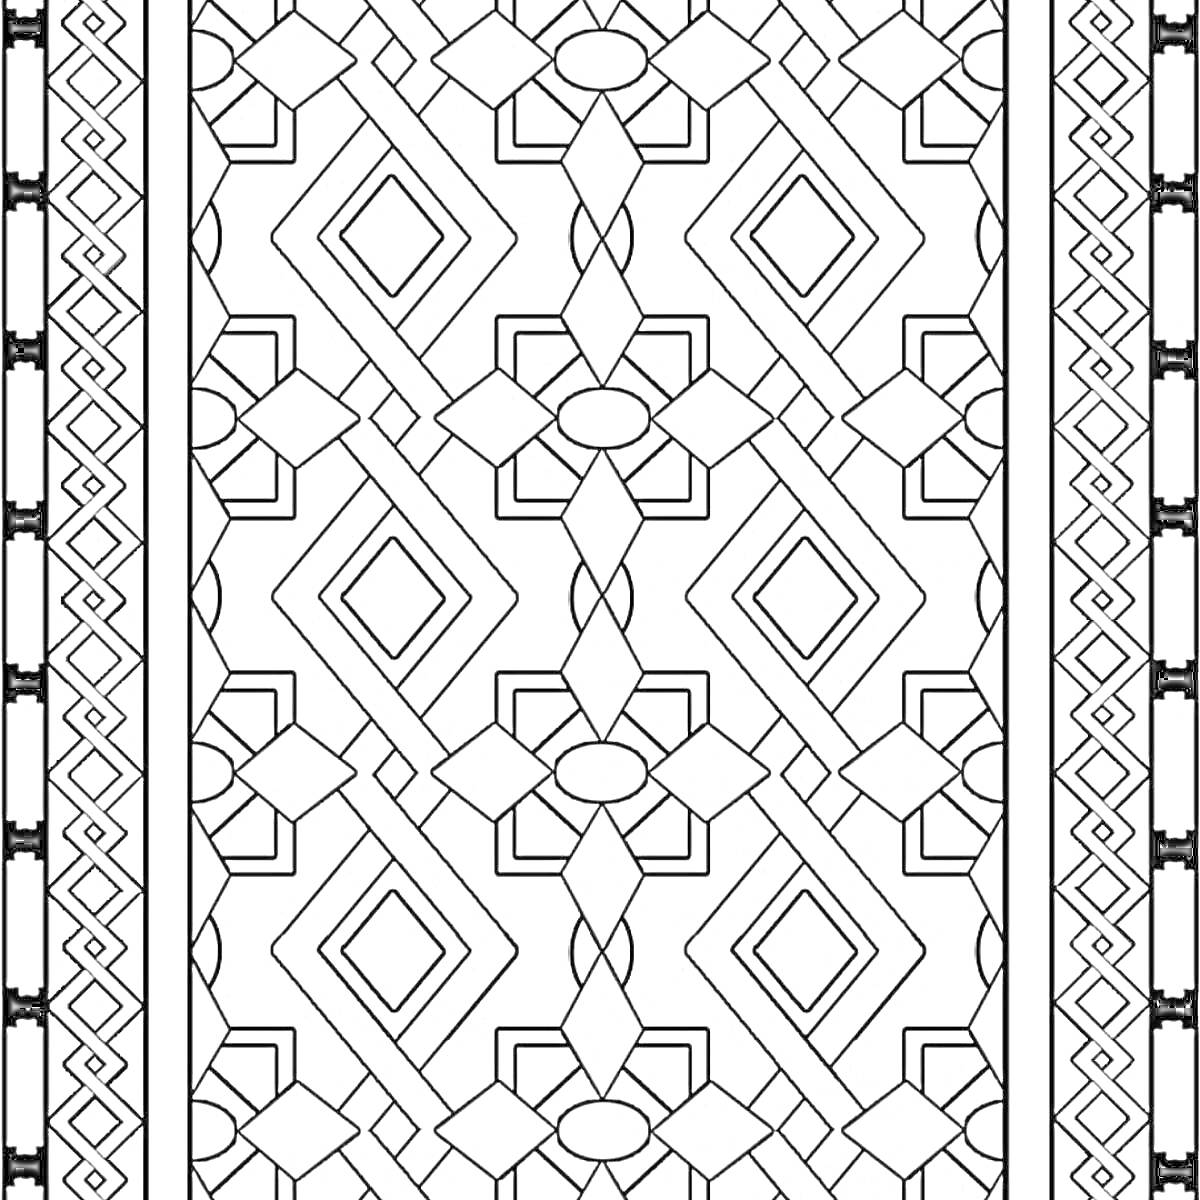 Геометрический белорусский орнамент с ромбами, прямоугольниками, овалами и зубчатыми линиями по бокам